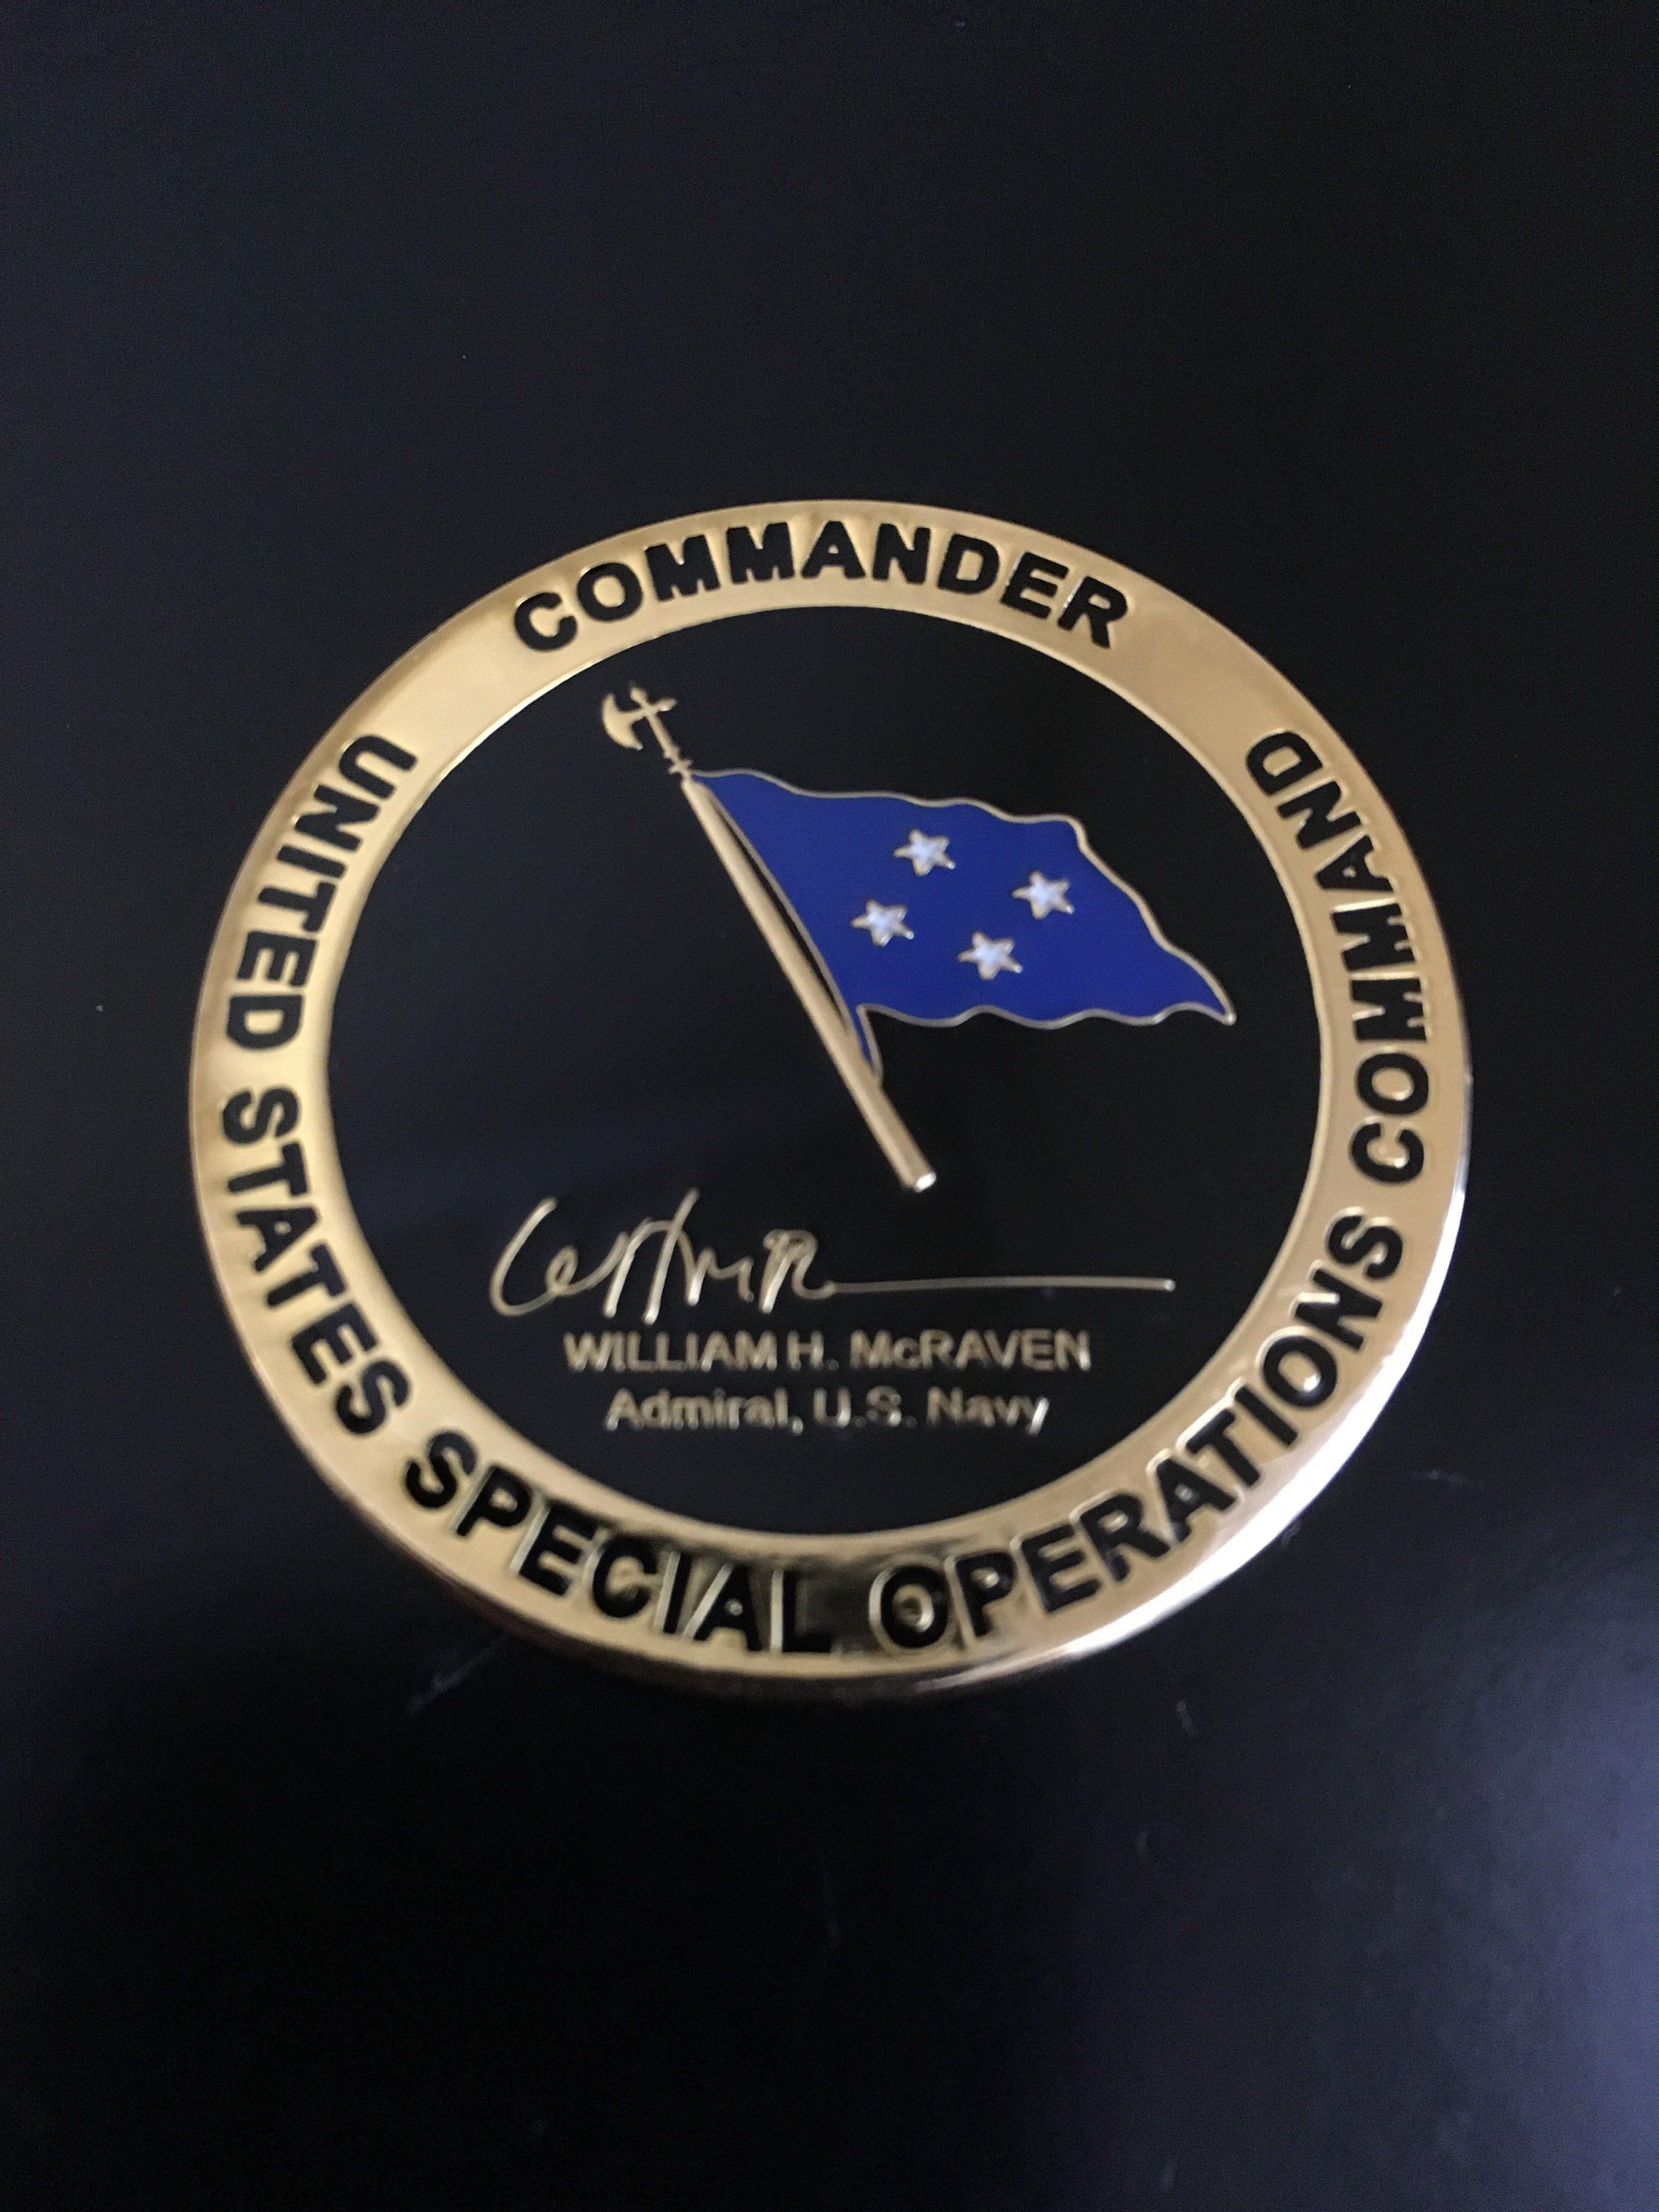 Socom Logo - SOCOM Commander (9th) Admiral William McRaven